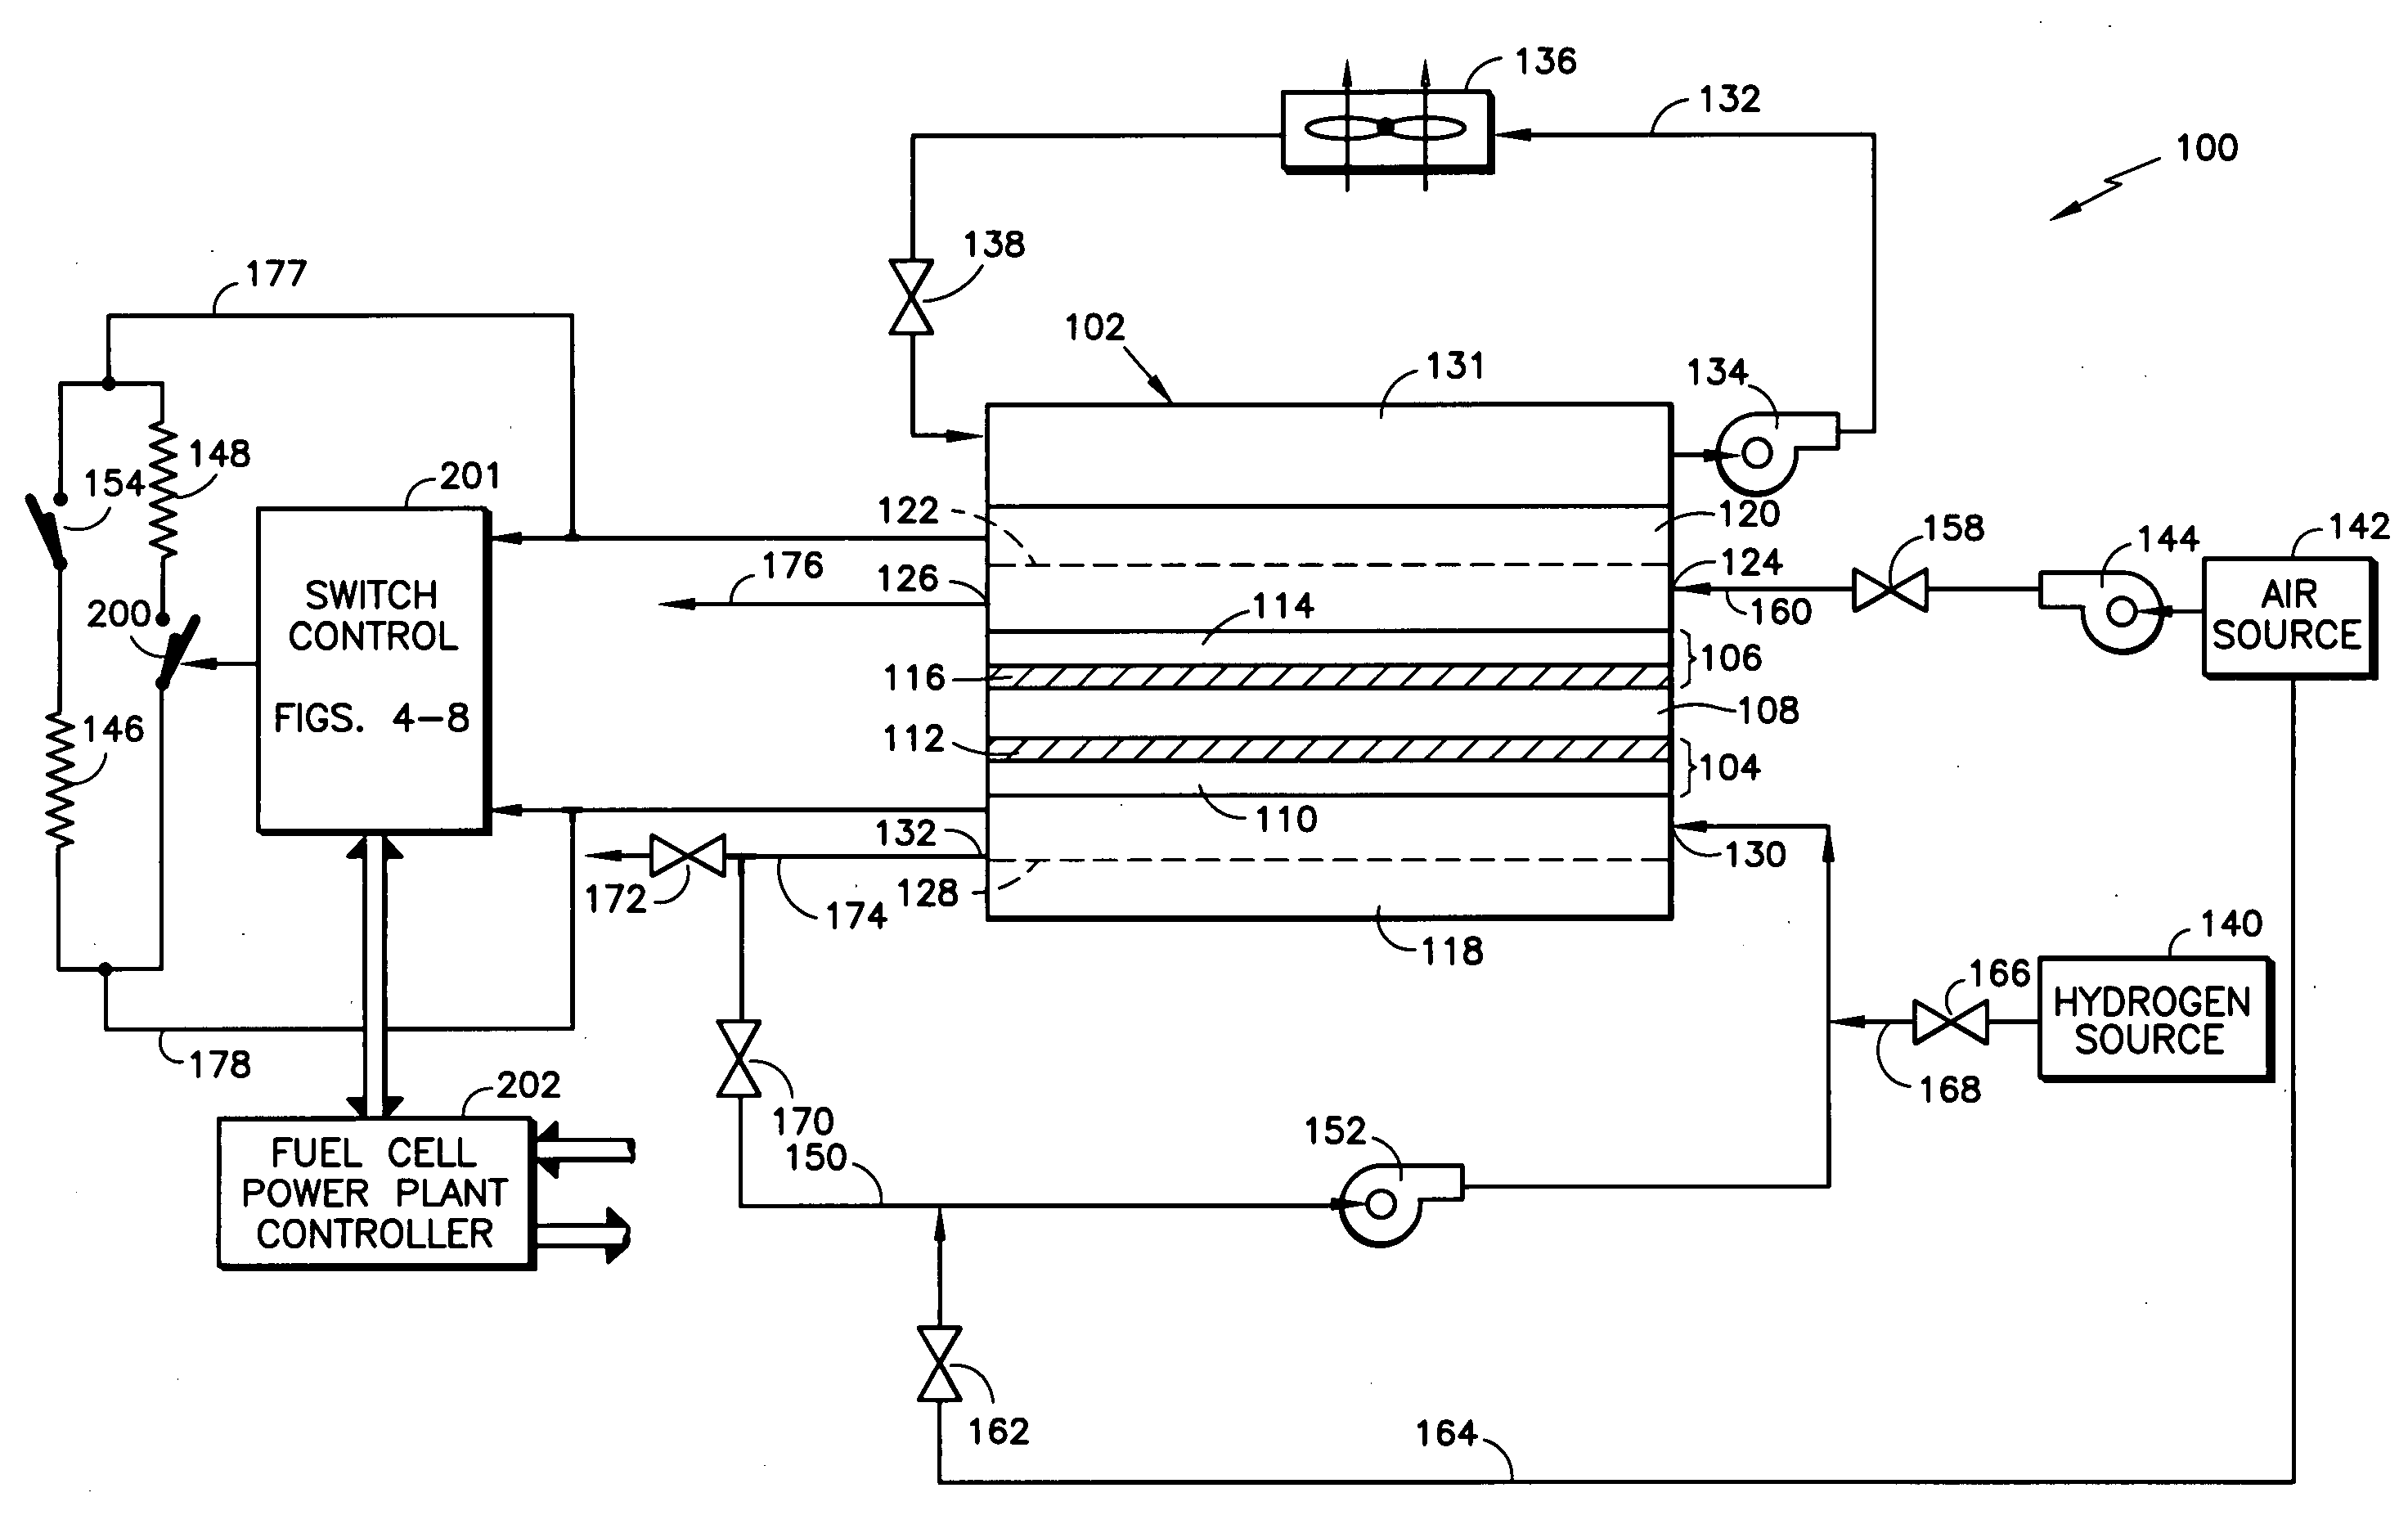 Fuel cell voltage control